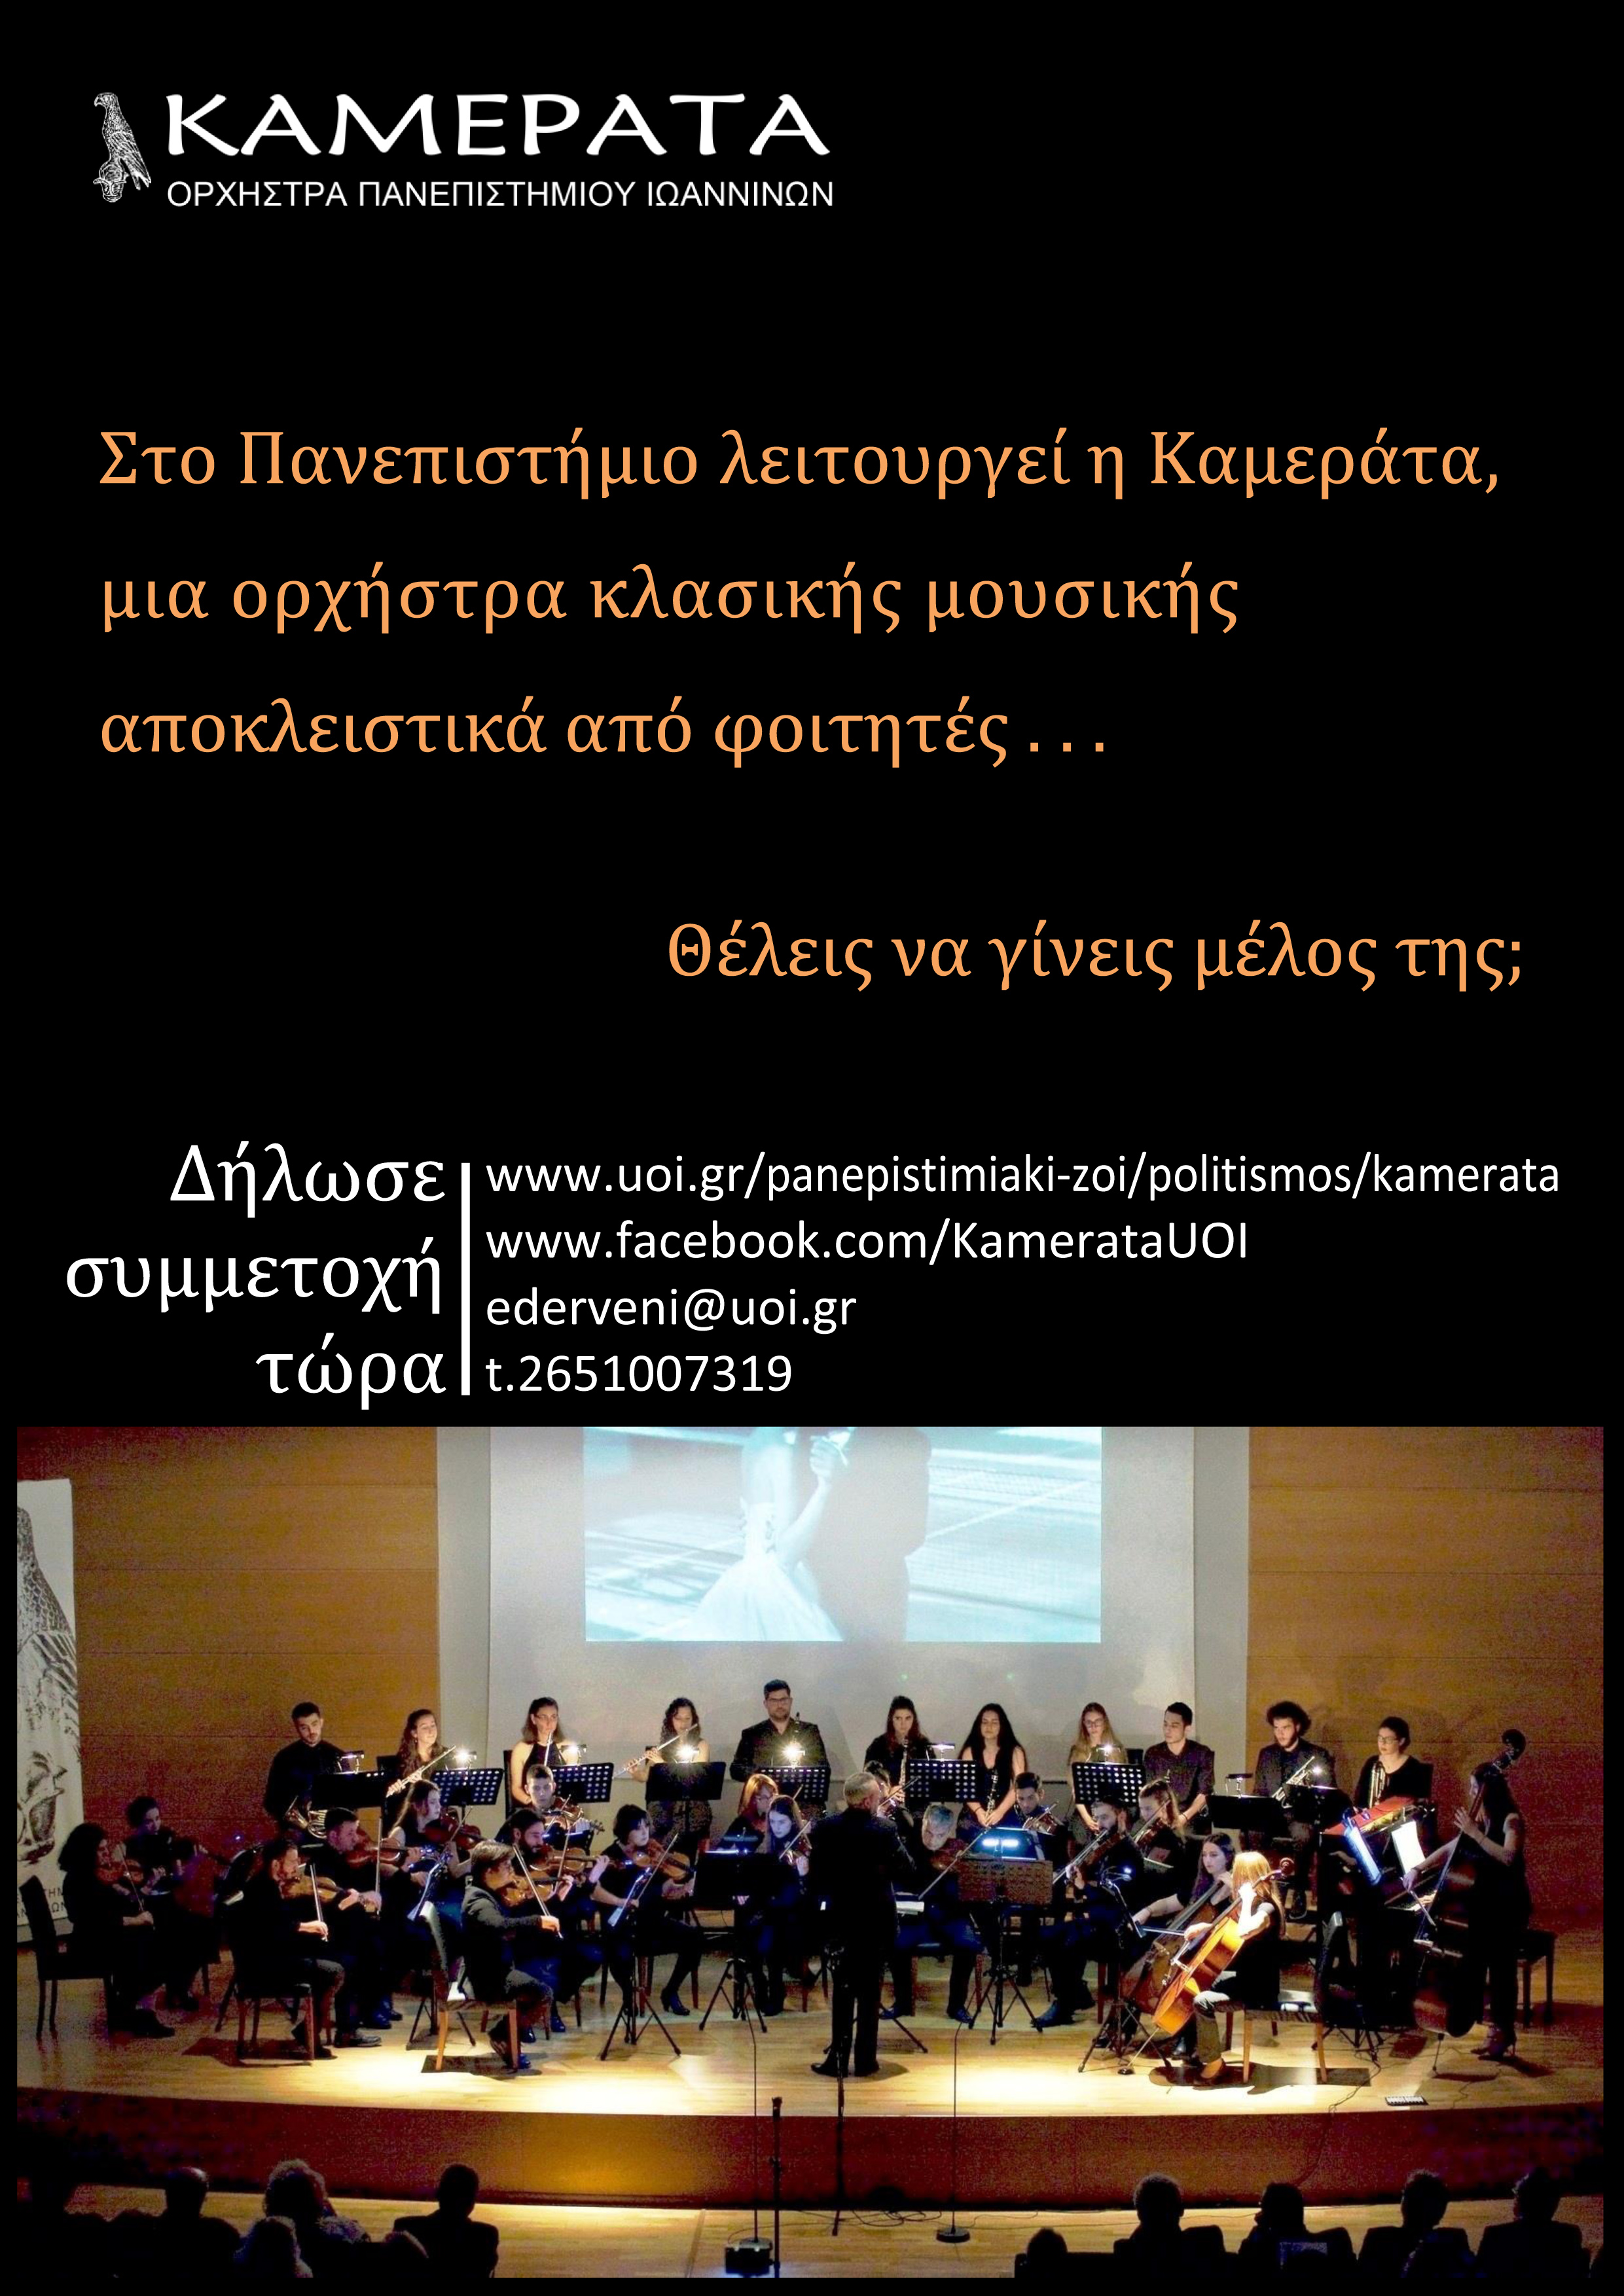  Καμεράτα, Ορχήστρα του Πανεπιστημίου Ιωαννίνων